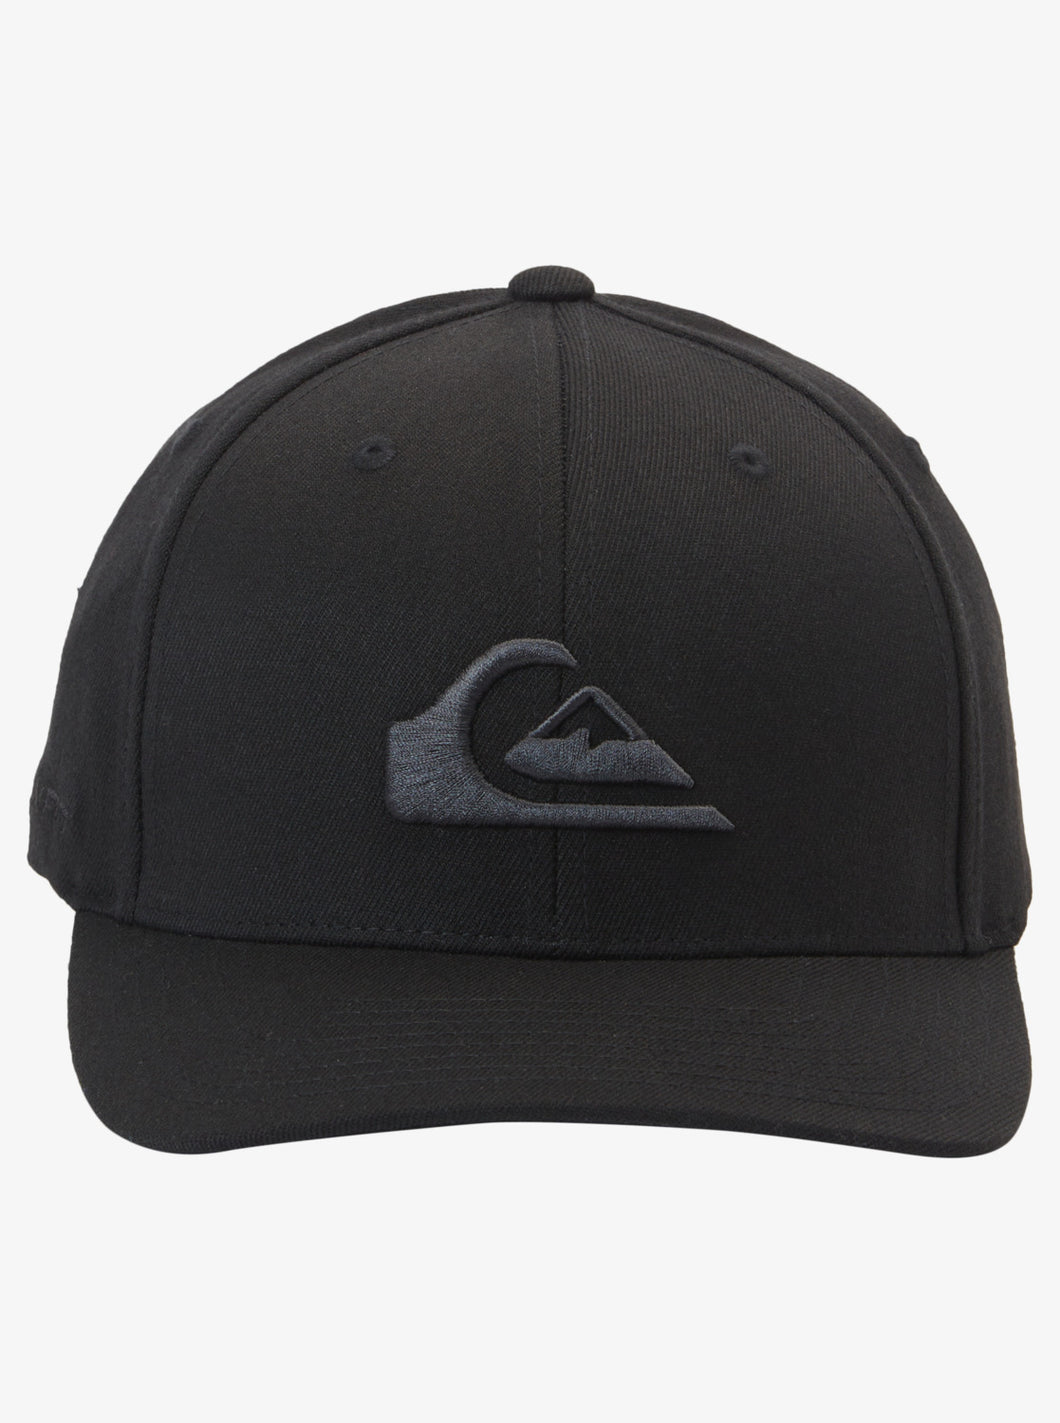 Quiksilver Mountain and Wave Flexfit Cap - Black/Black